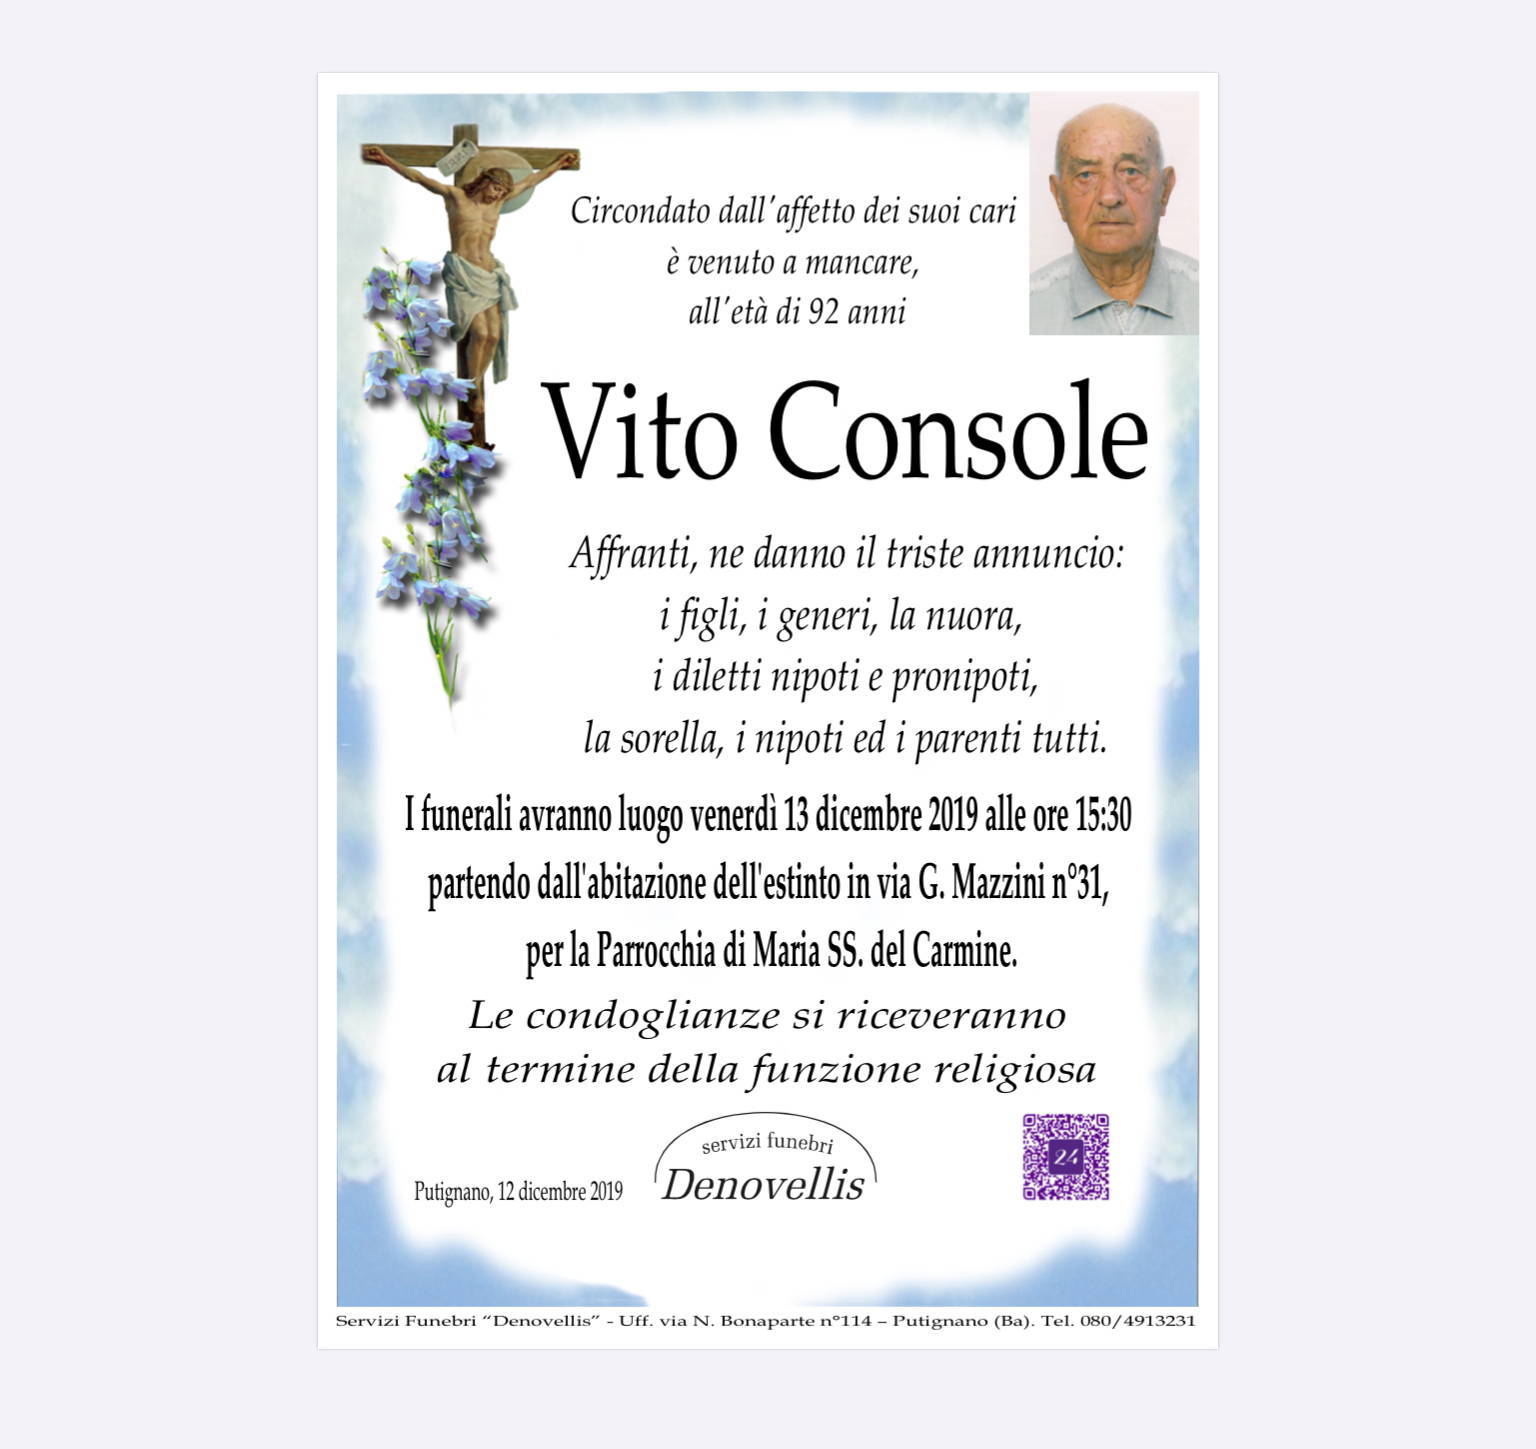 Vito Console